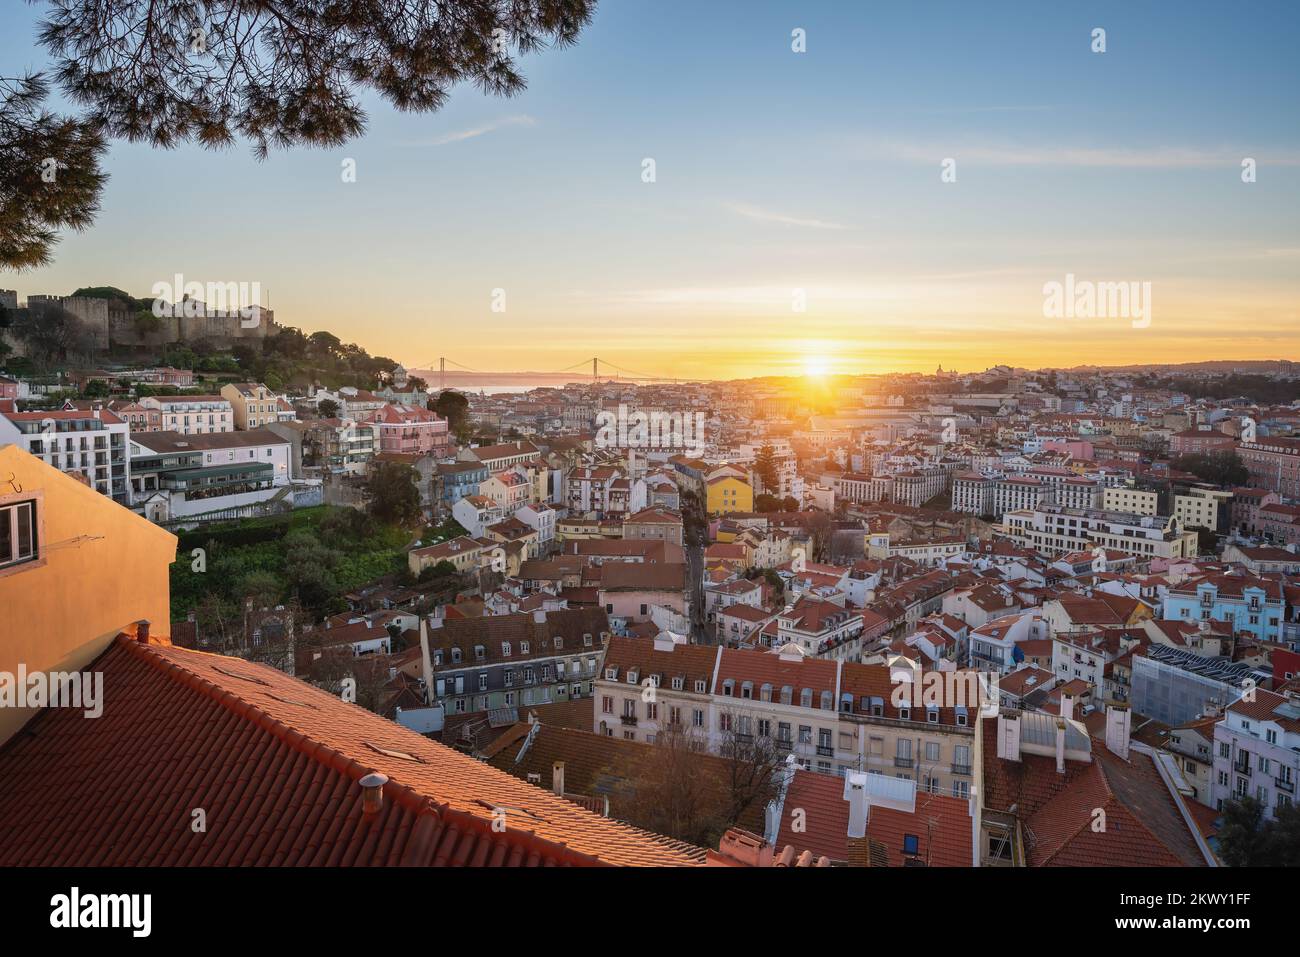 Vista aerea di Lisbona al tramonto dal punto di osservazione Miradouro da Graca - Lisbona, Portogallo Foto Stock